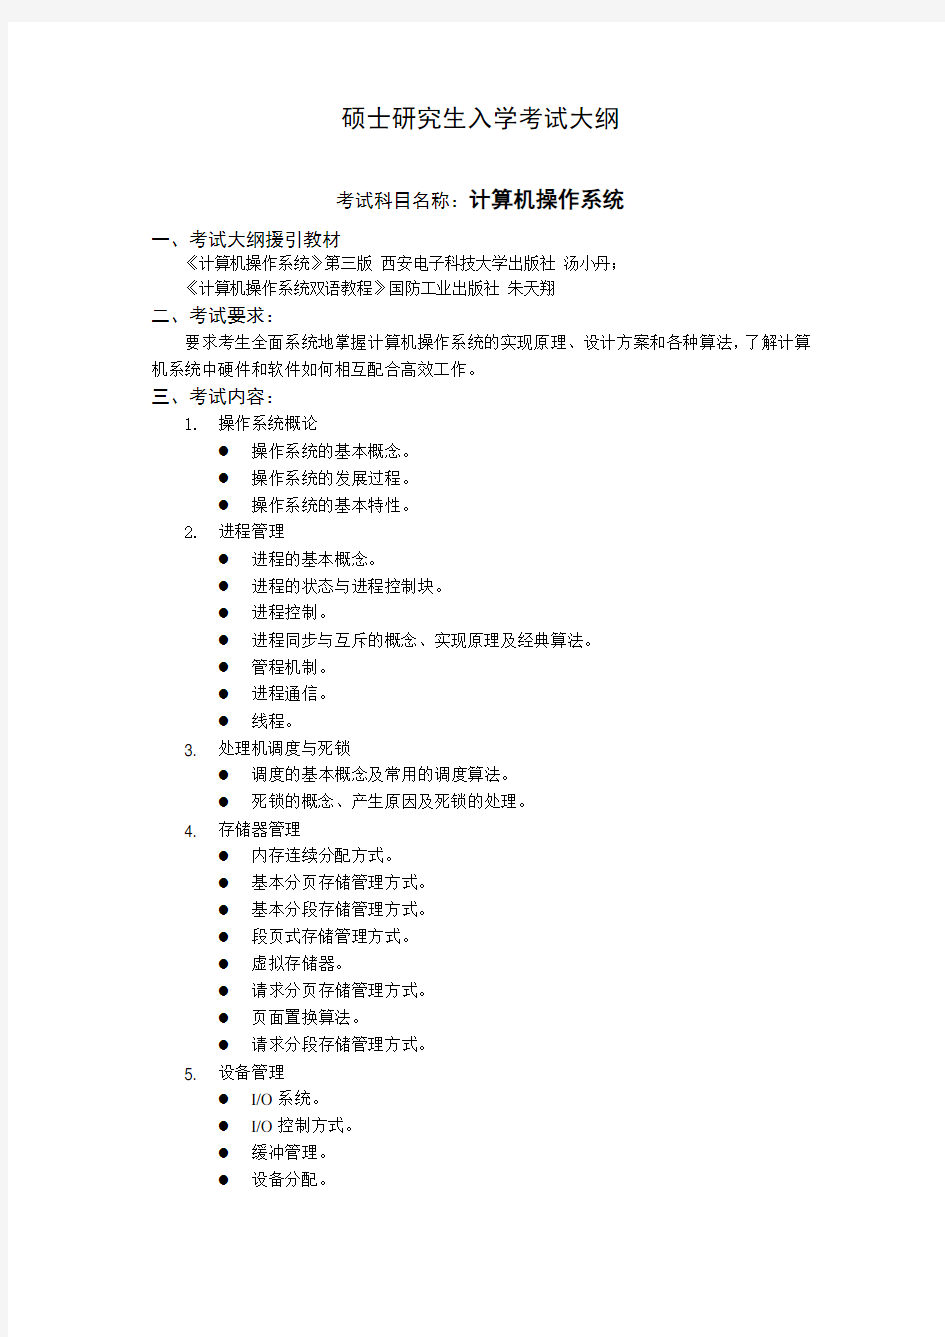 沈阳工业大学2020年考试大纲_837计算机操作系统